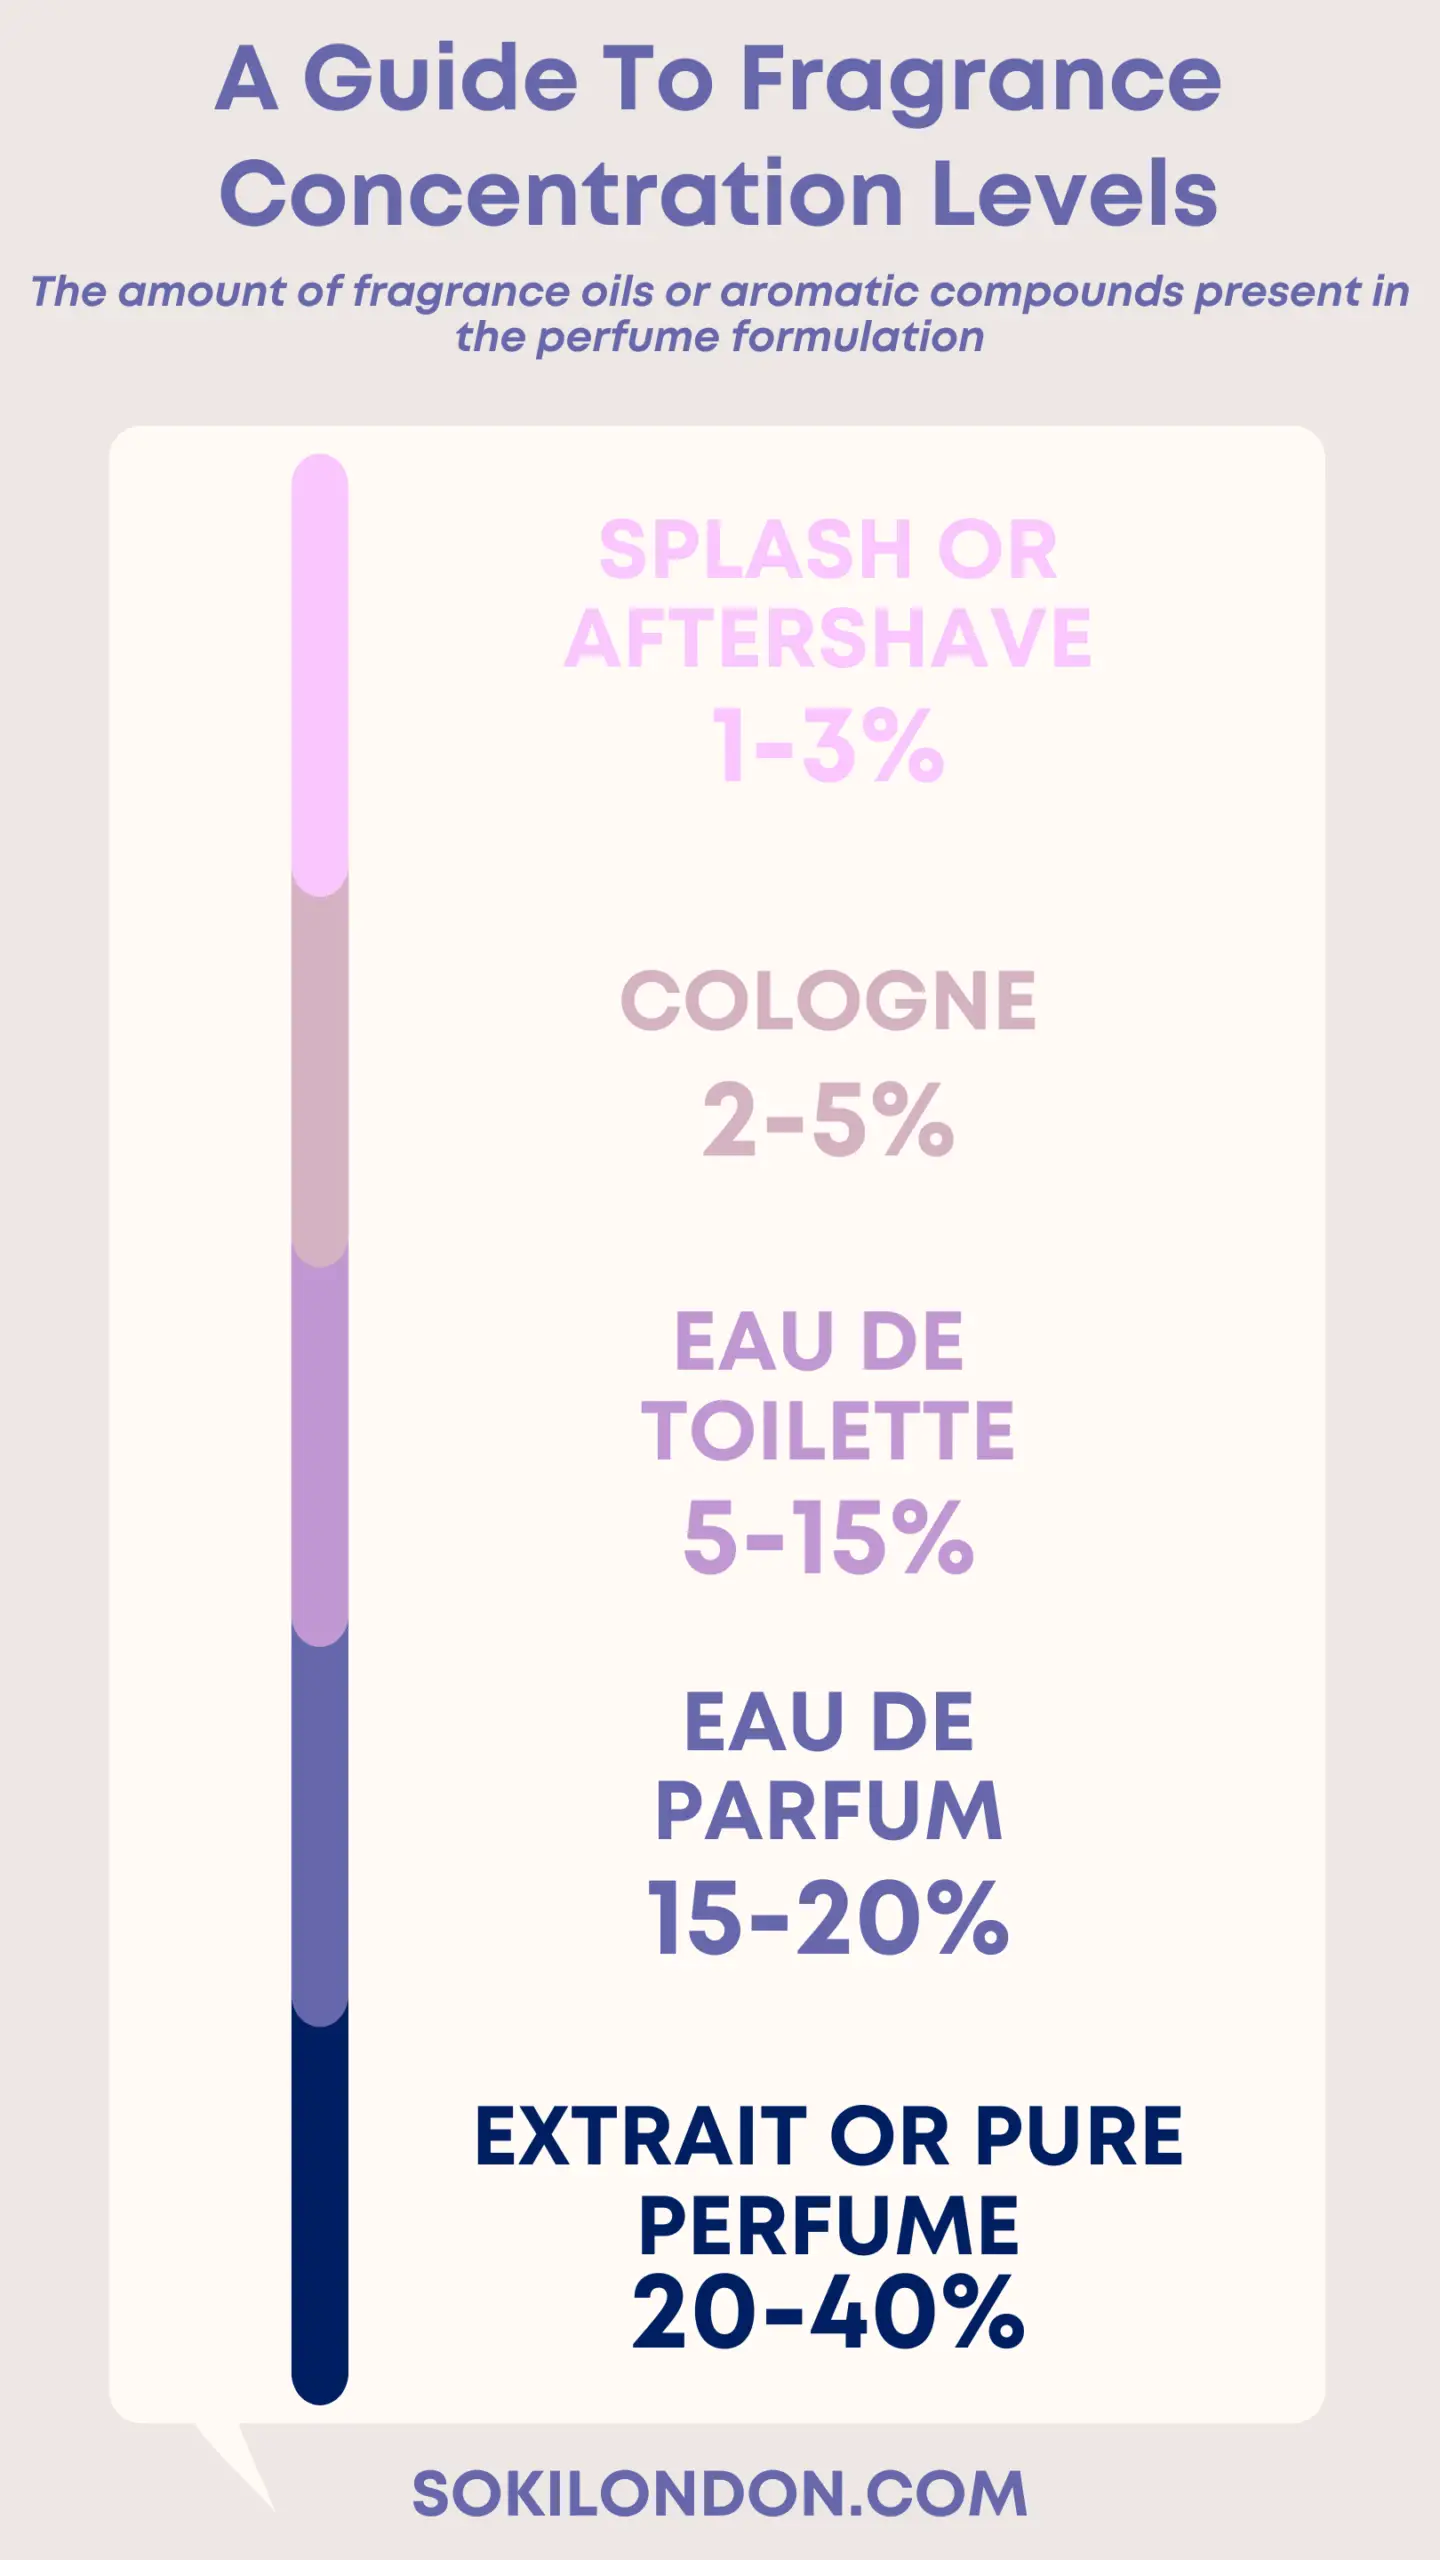 Types and Concentration Levels of Fragrances Explained: Eau de Parfum vs Eau de Toilette